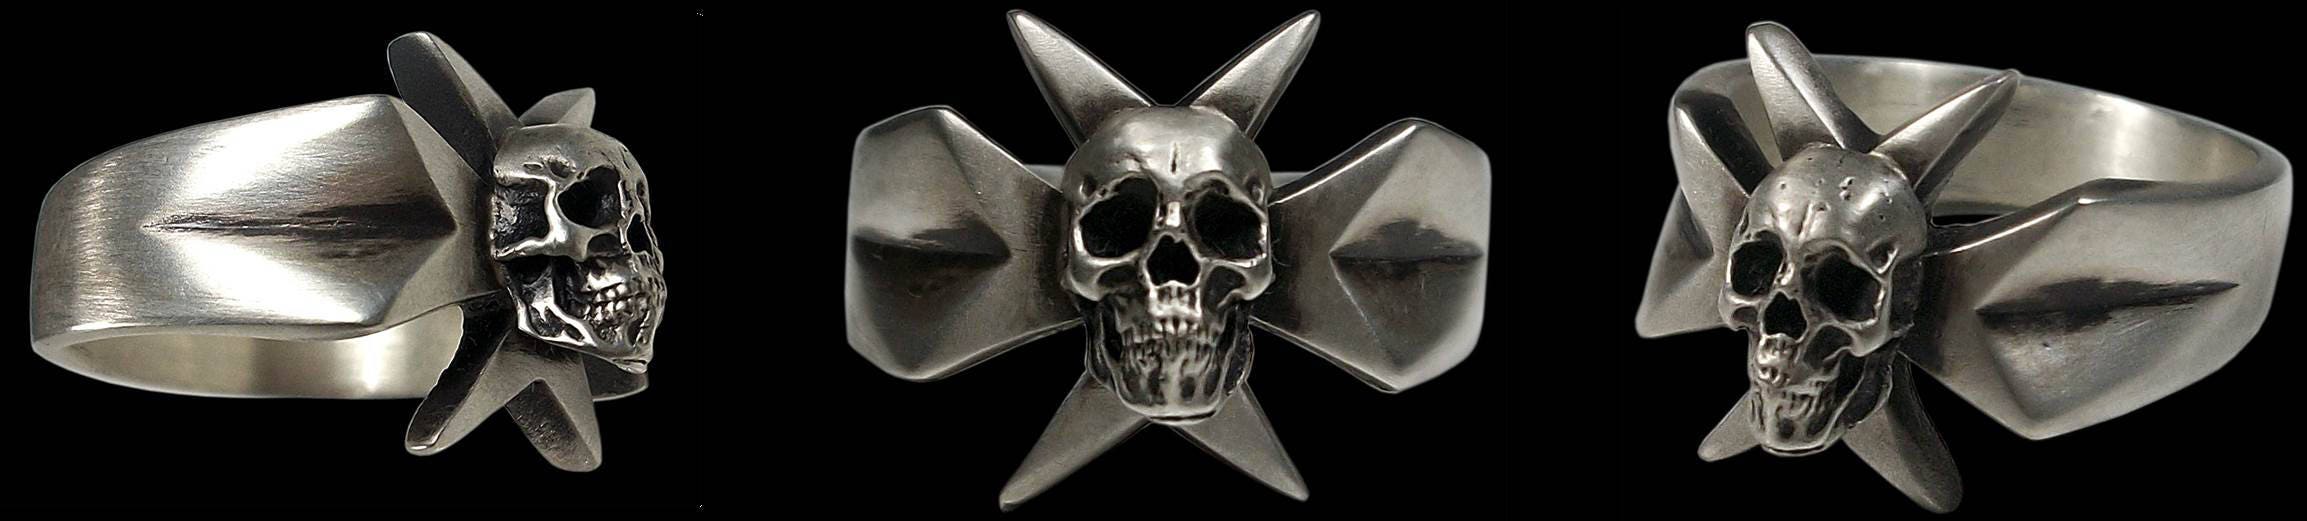 Maltese cross ring - Sterling Silver Knights Templar Maltese Cross Skull Ring -  ALL SIZES